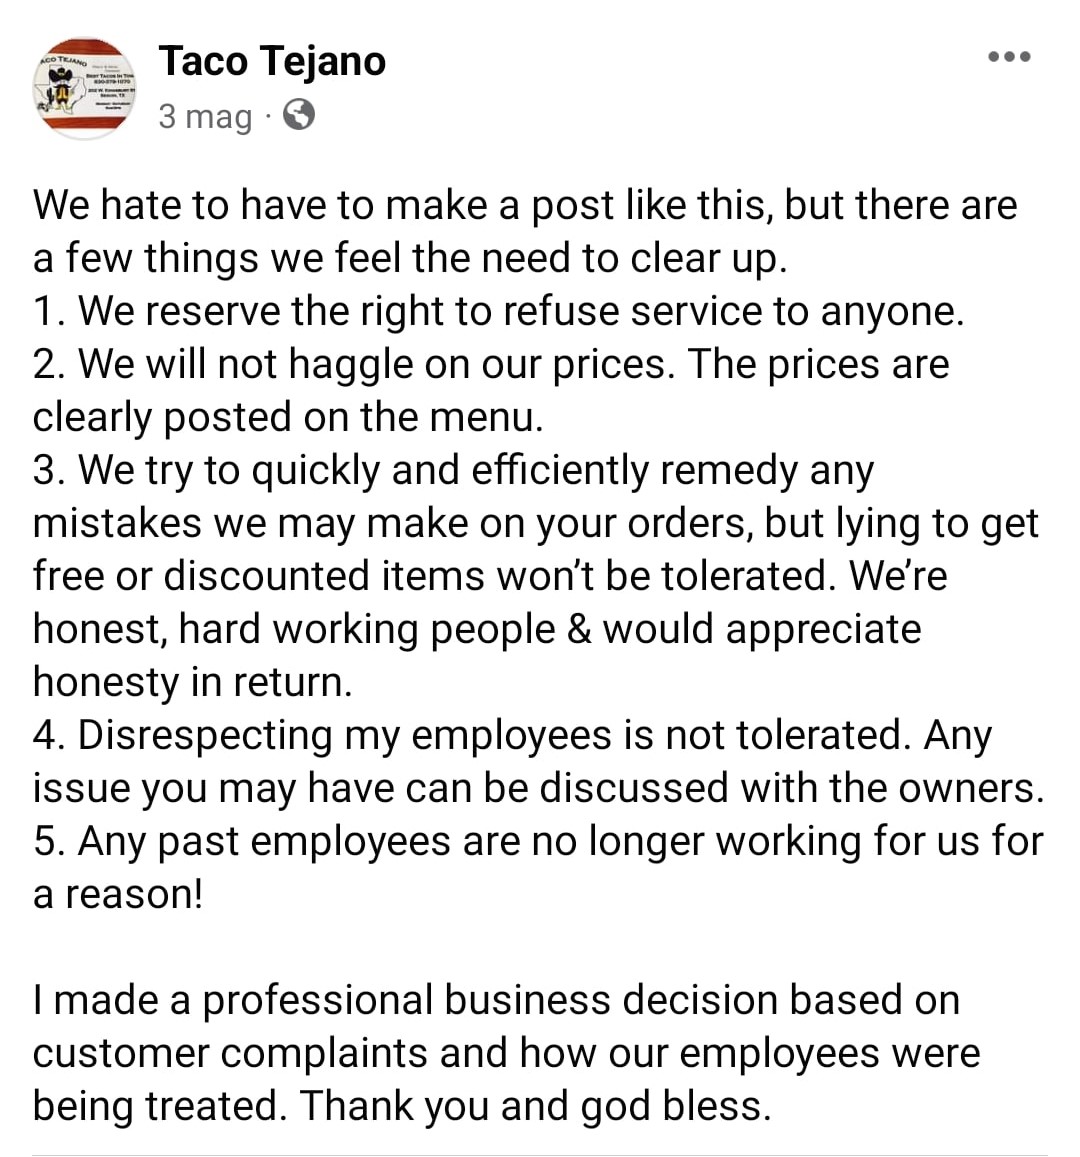 La giustificazione del ristorante. Fonte: Taco Tejano - Facebook